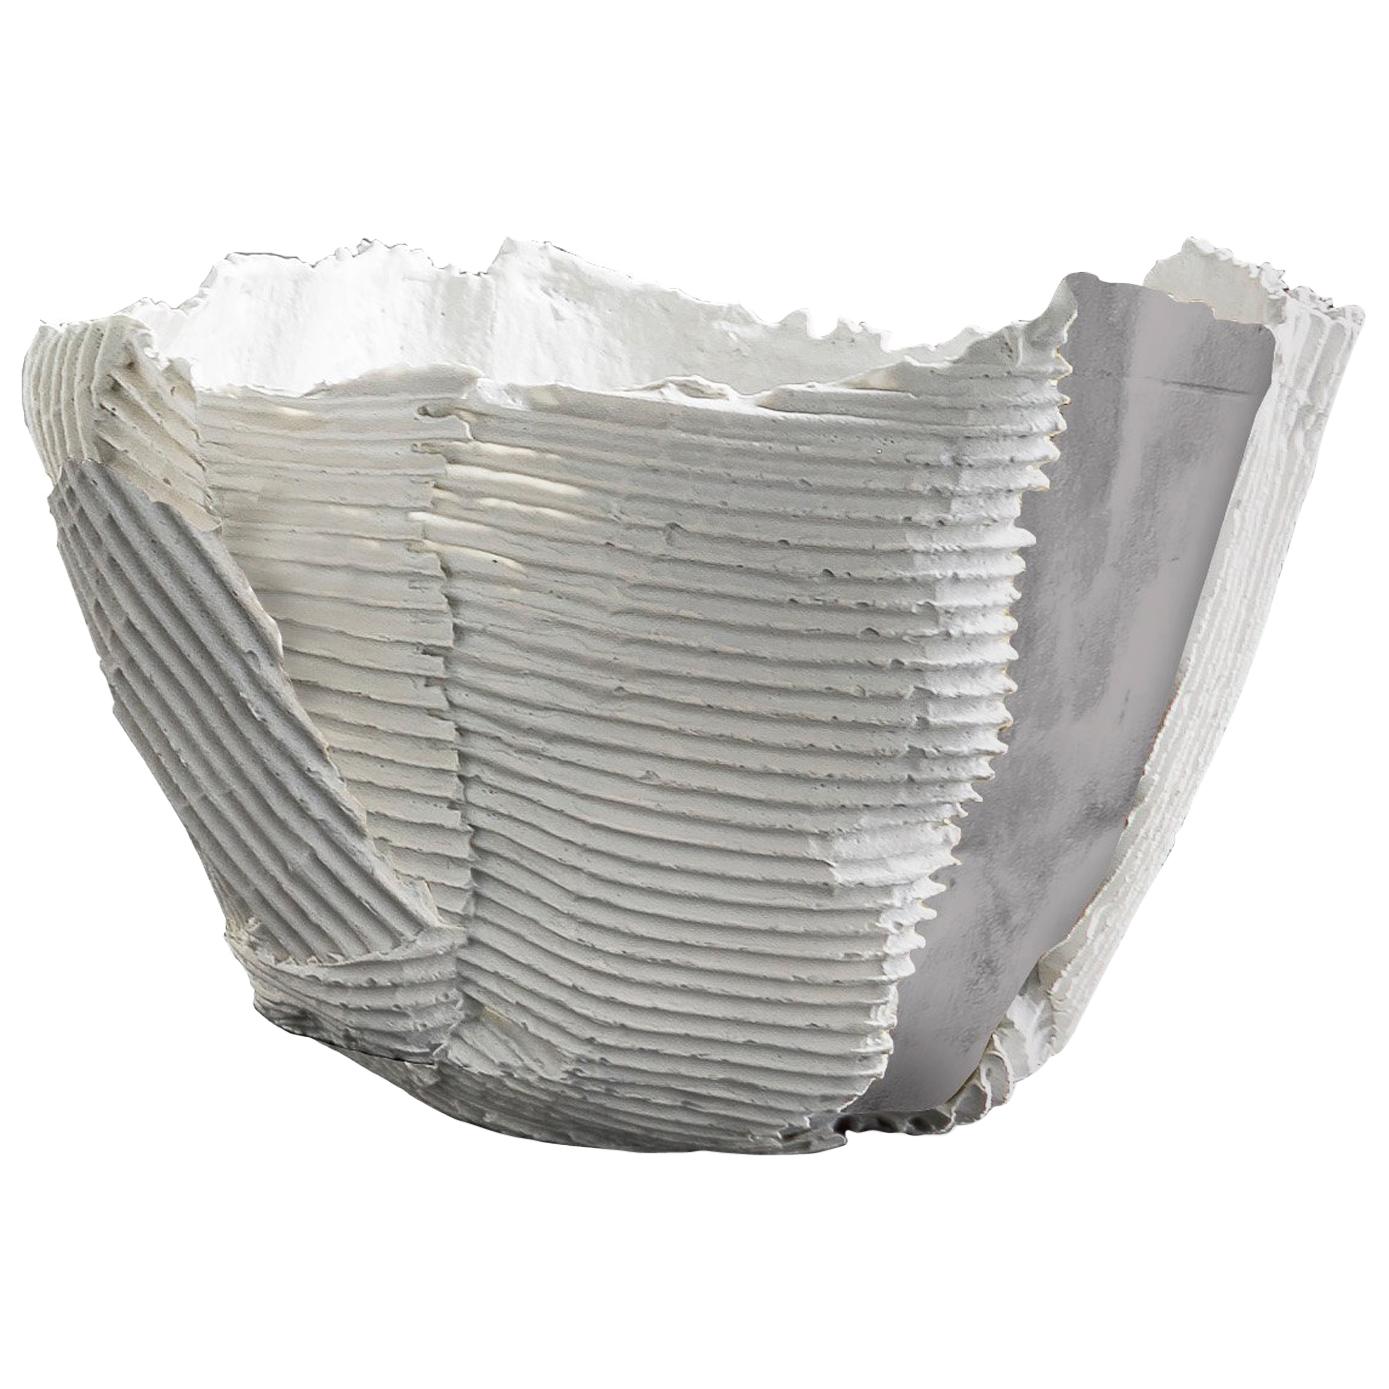 Bol contemporain en céramique Cartocci Texture blanc et gris